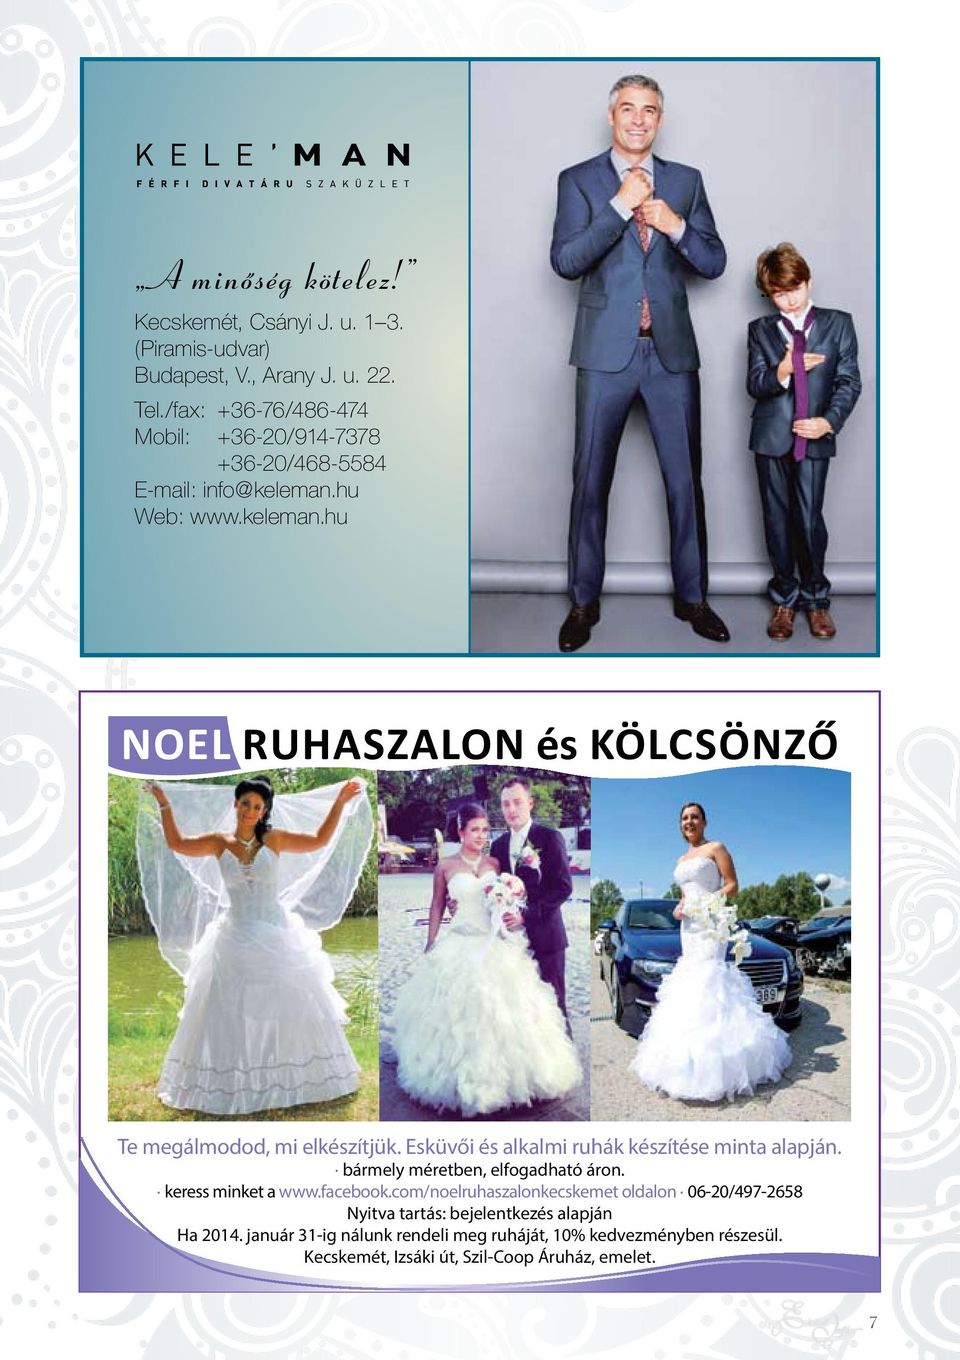 Esküvői és alkalmi ruhák készítése minta alapján. bármely méretben, elfogadható áron. keress minket a www.facebook.